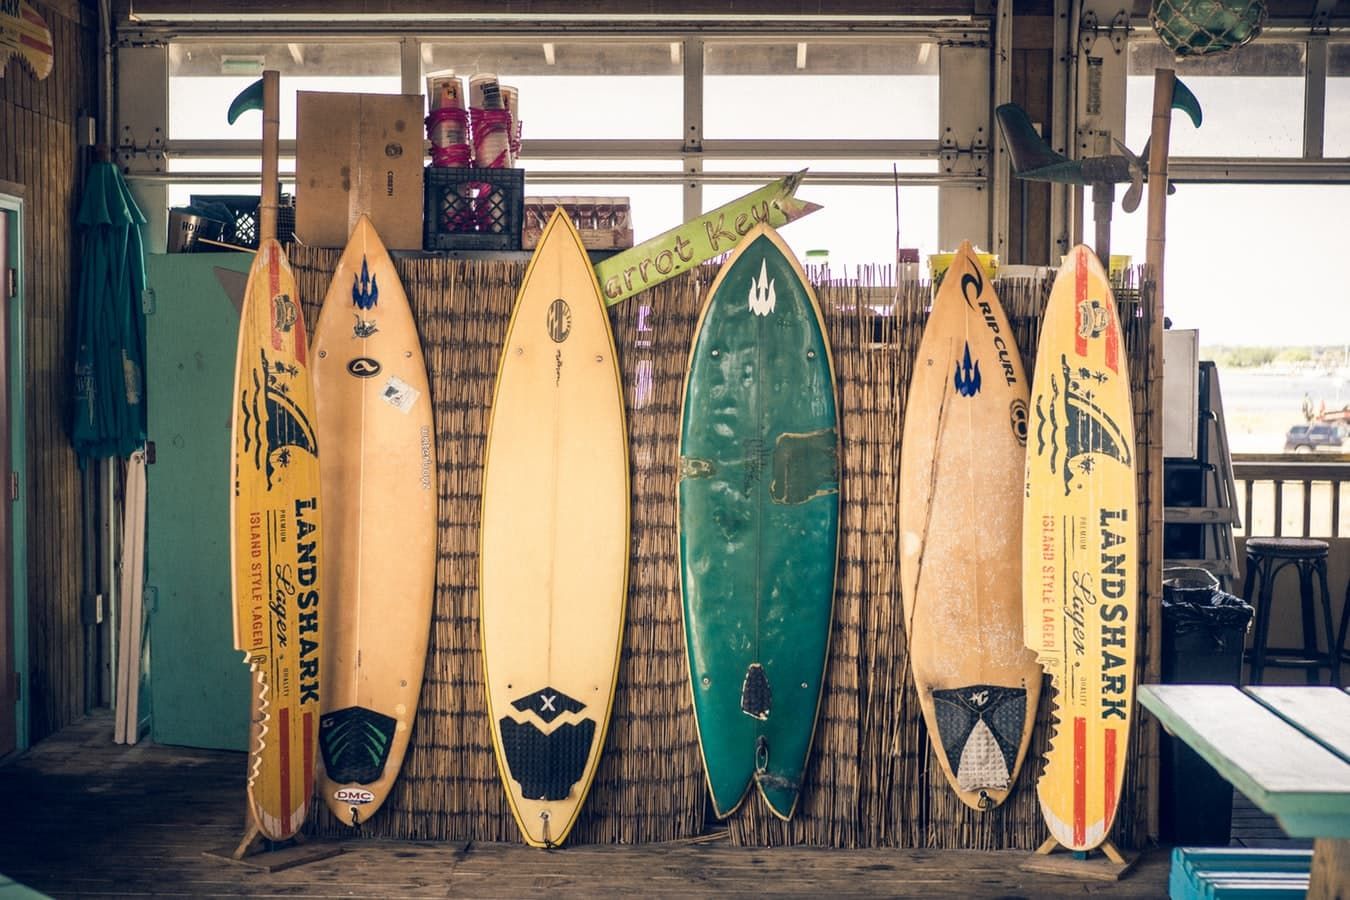 Dalga Sörfüne başlamak ve sörf tahtası seçimi